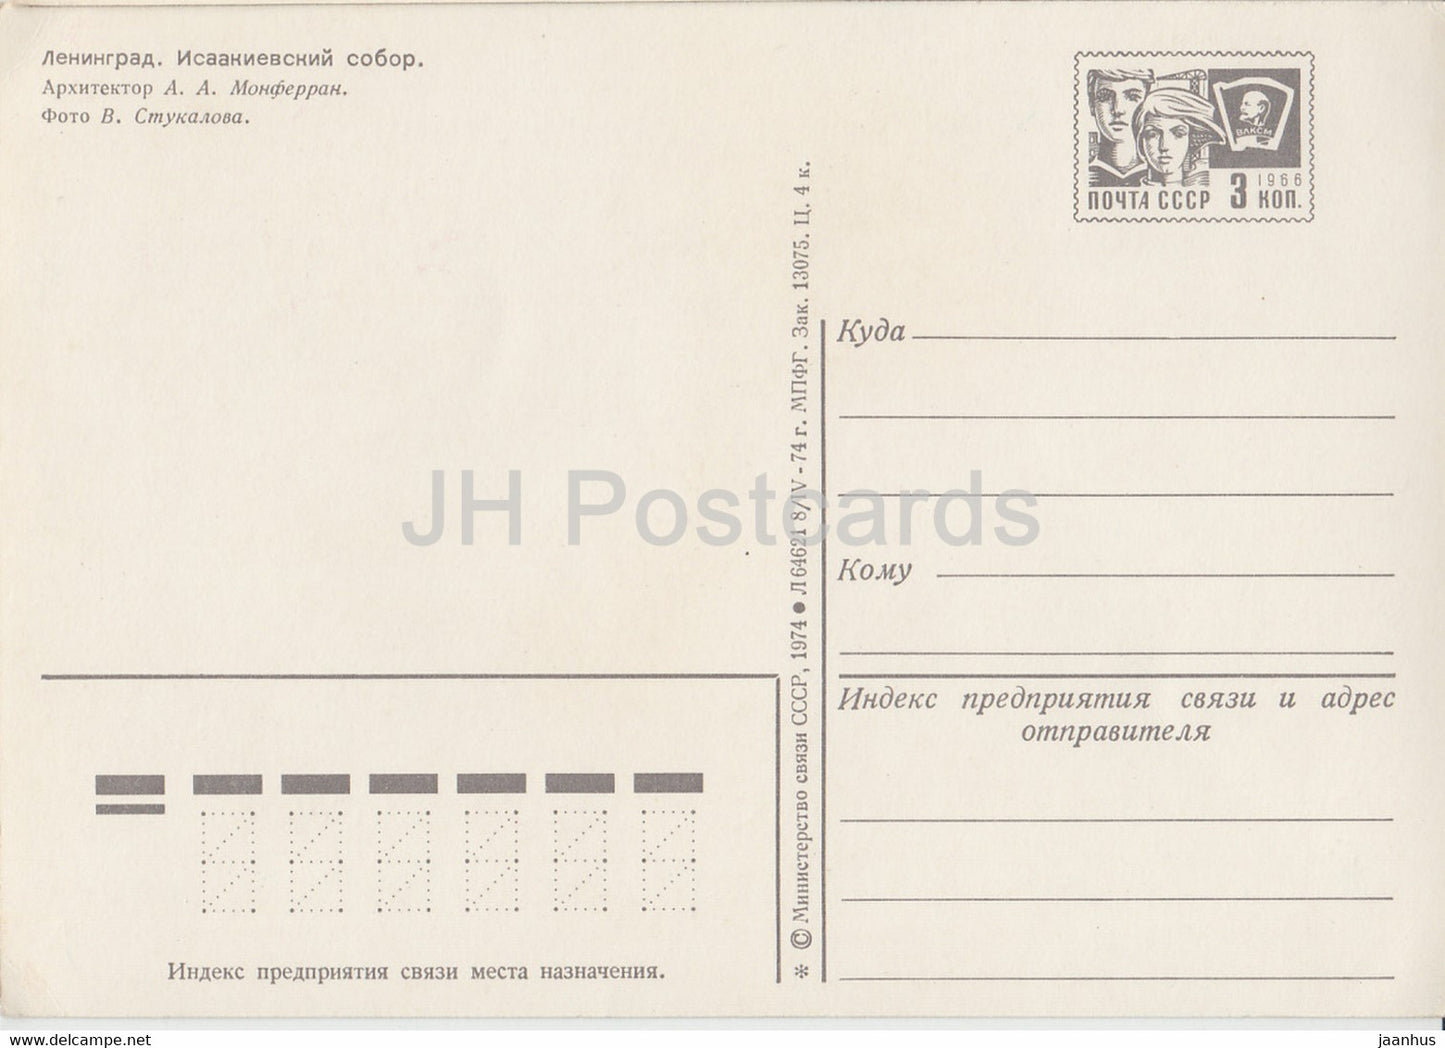 Leningrad - Saint-Pétersbourg - Cathédrale Saint-Isaac - entier postal - 1974 - Russie URSS - inutilisé